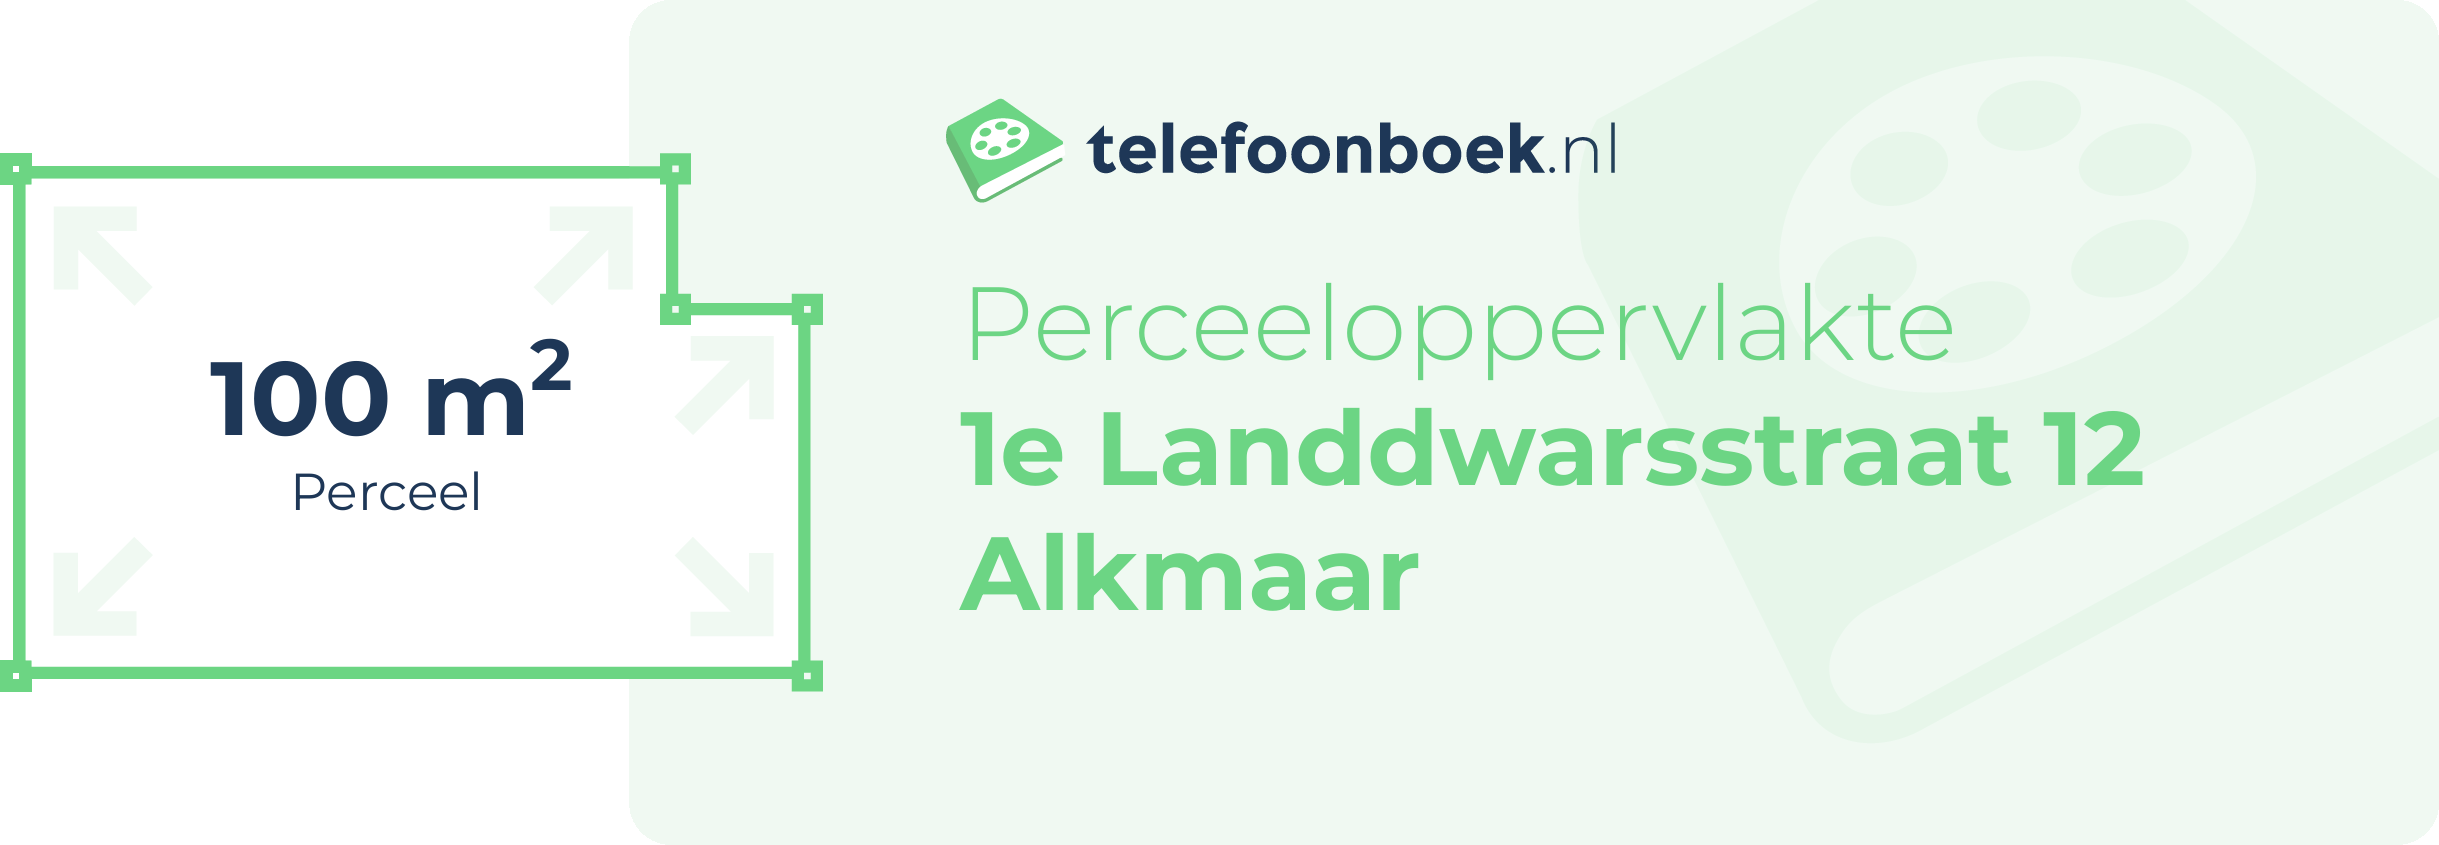 Perceeloppervlakte 1e Landdwarsstraat 12 Alkmaar